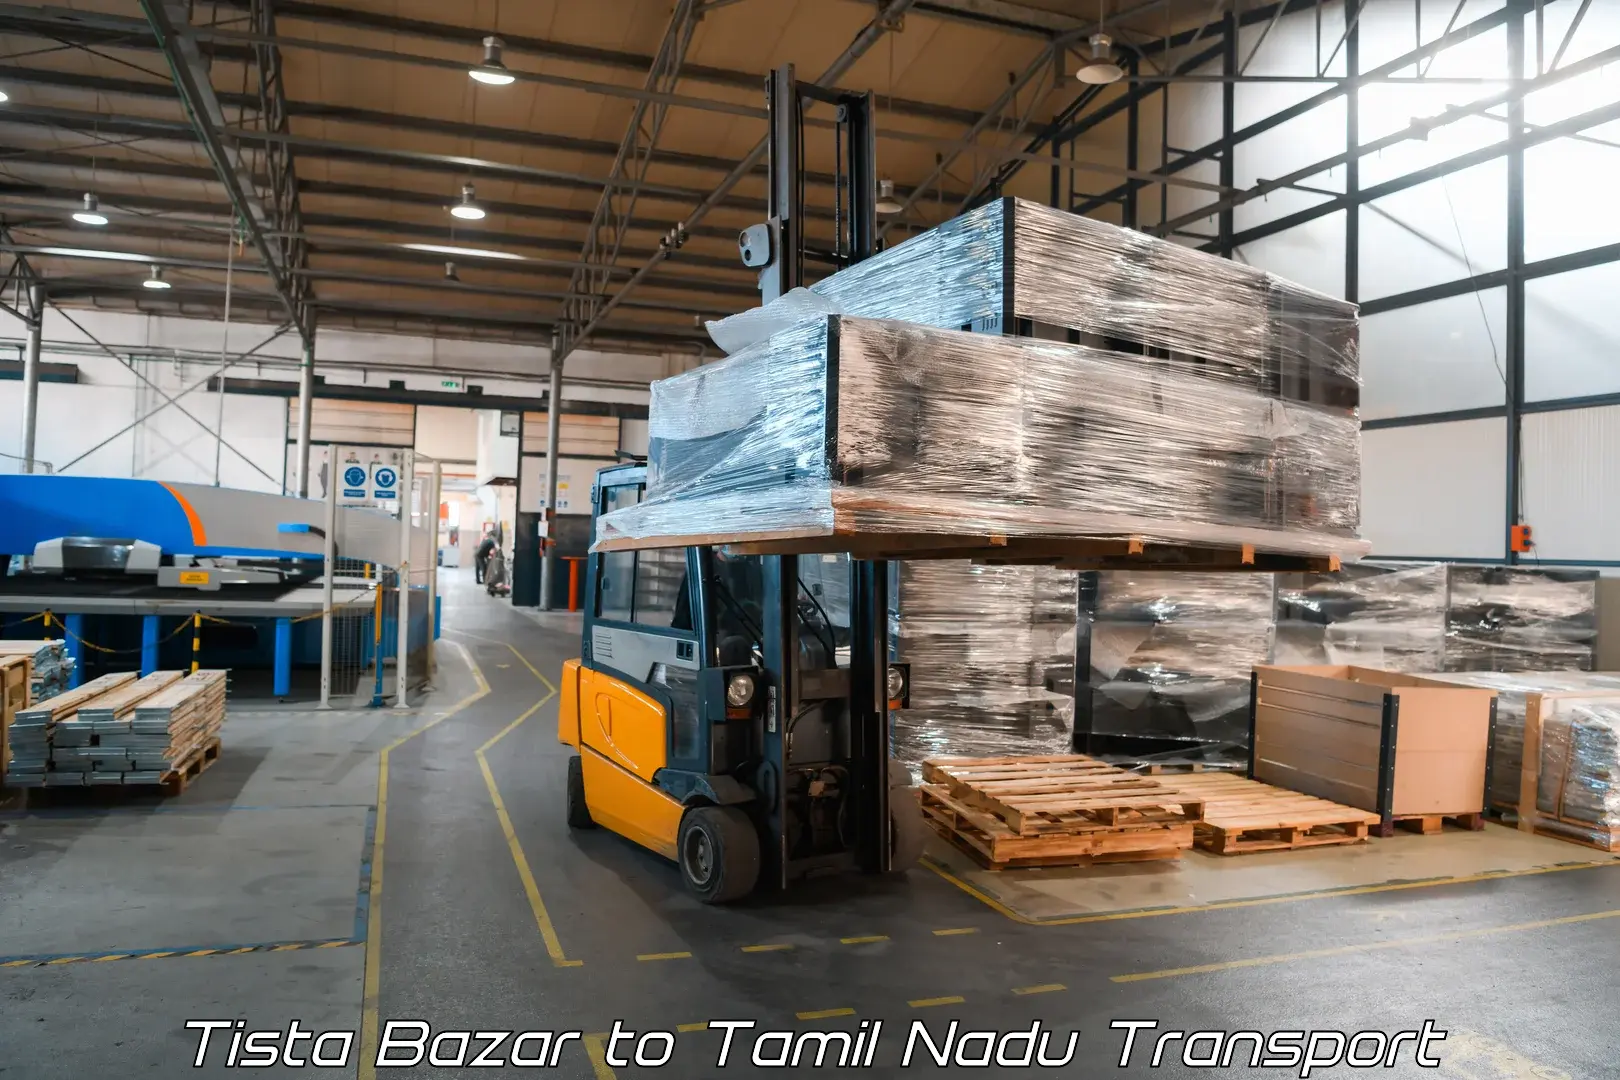 Air cargo transport services in Tista Bazar to Tamil Nadu